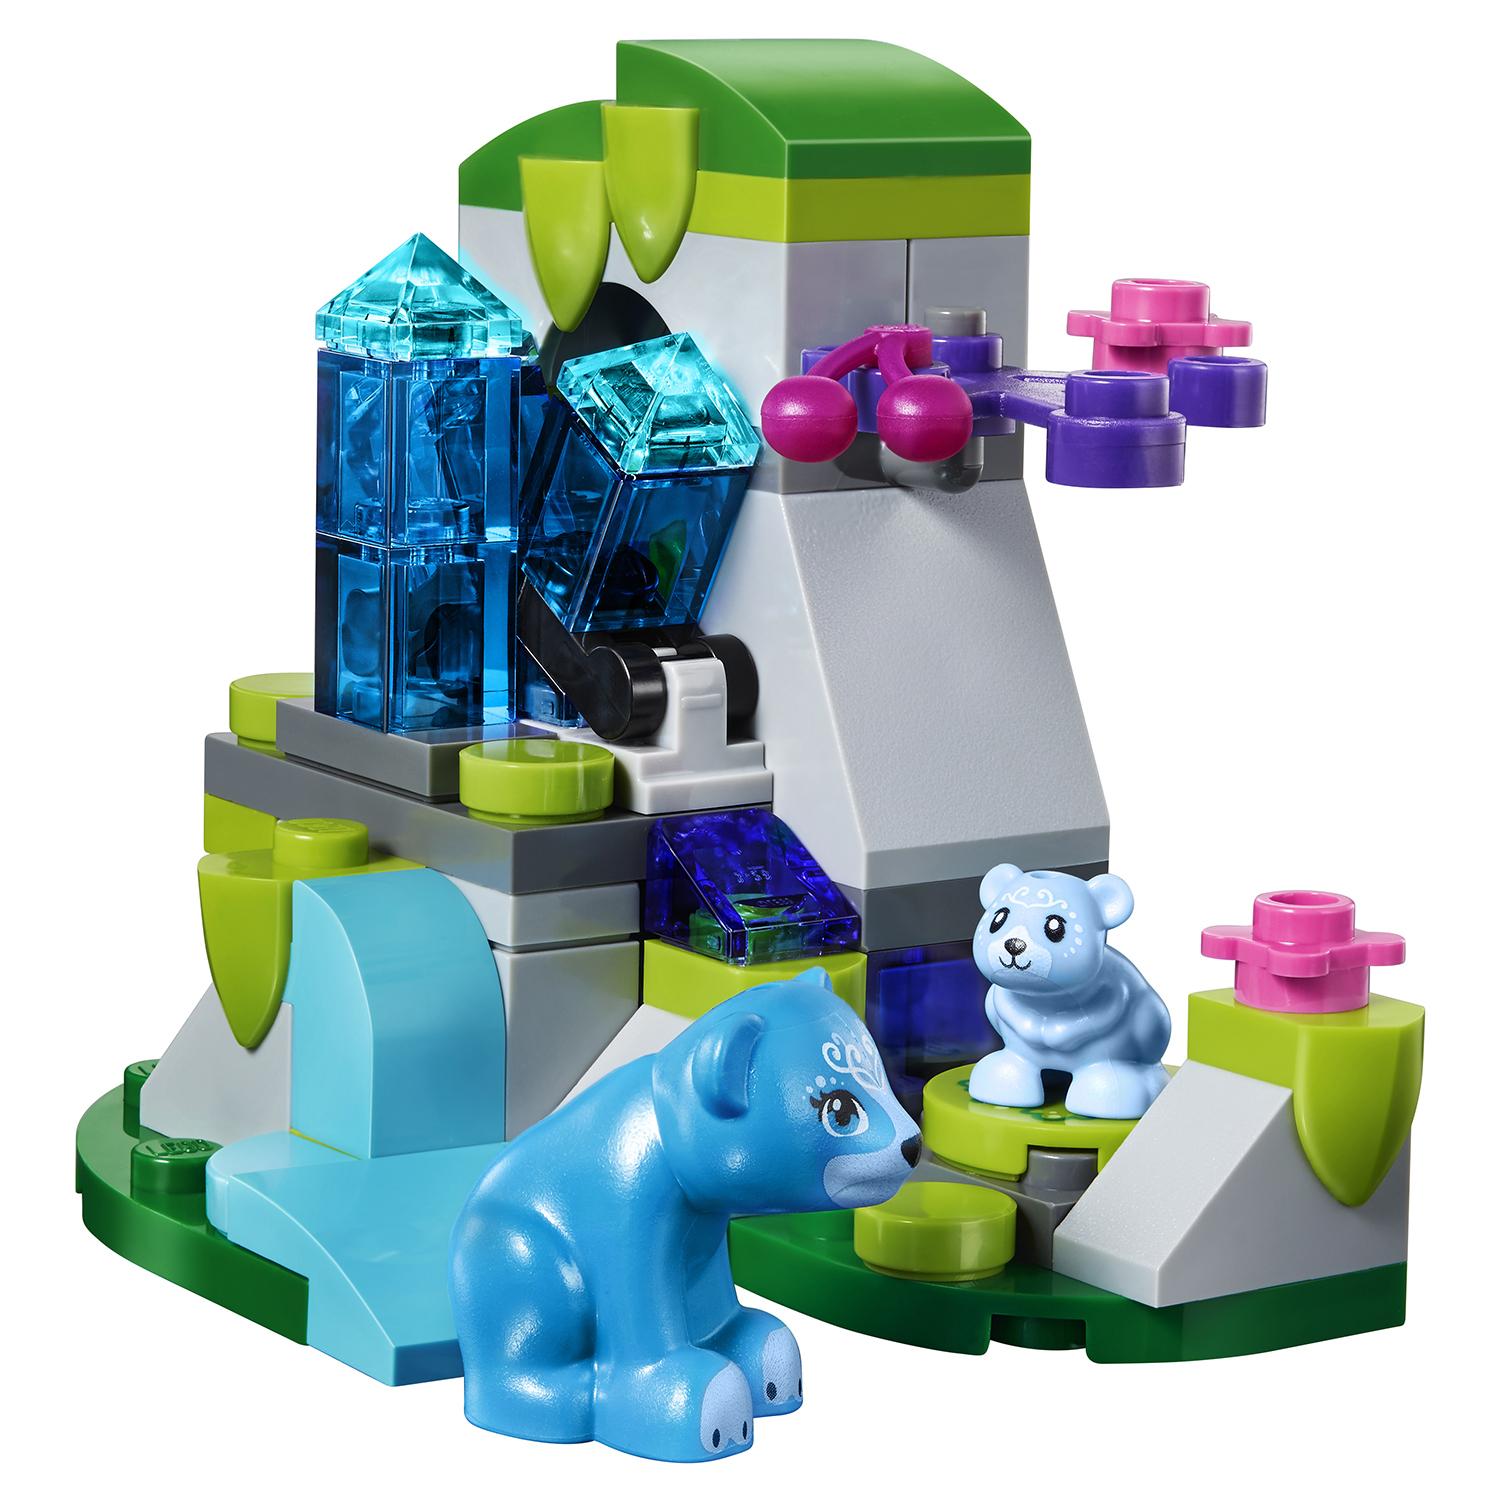 Lego Elves 41183 Дракон Короля Гоблинов